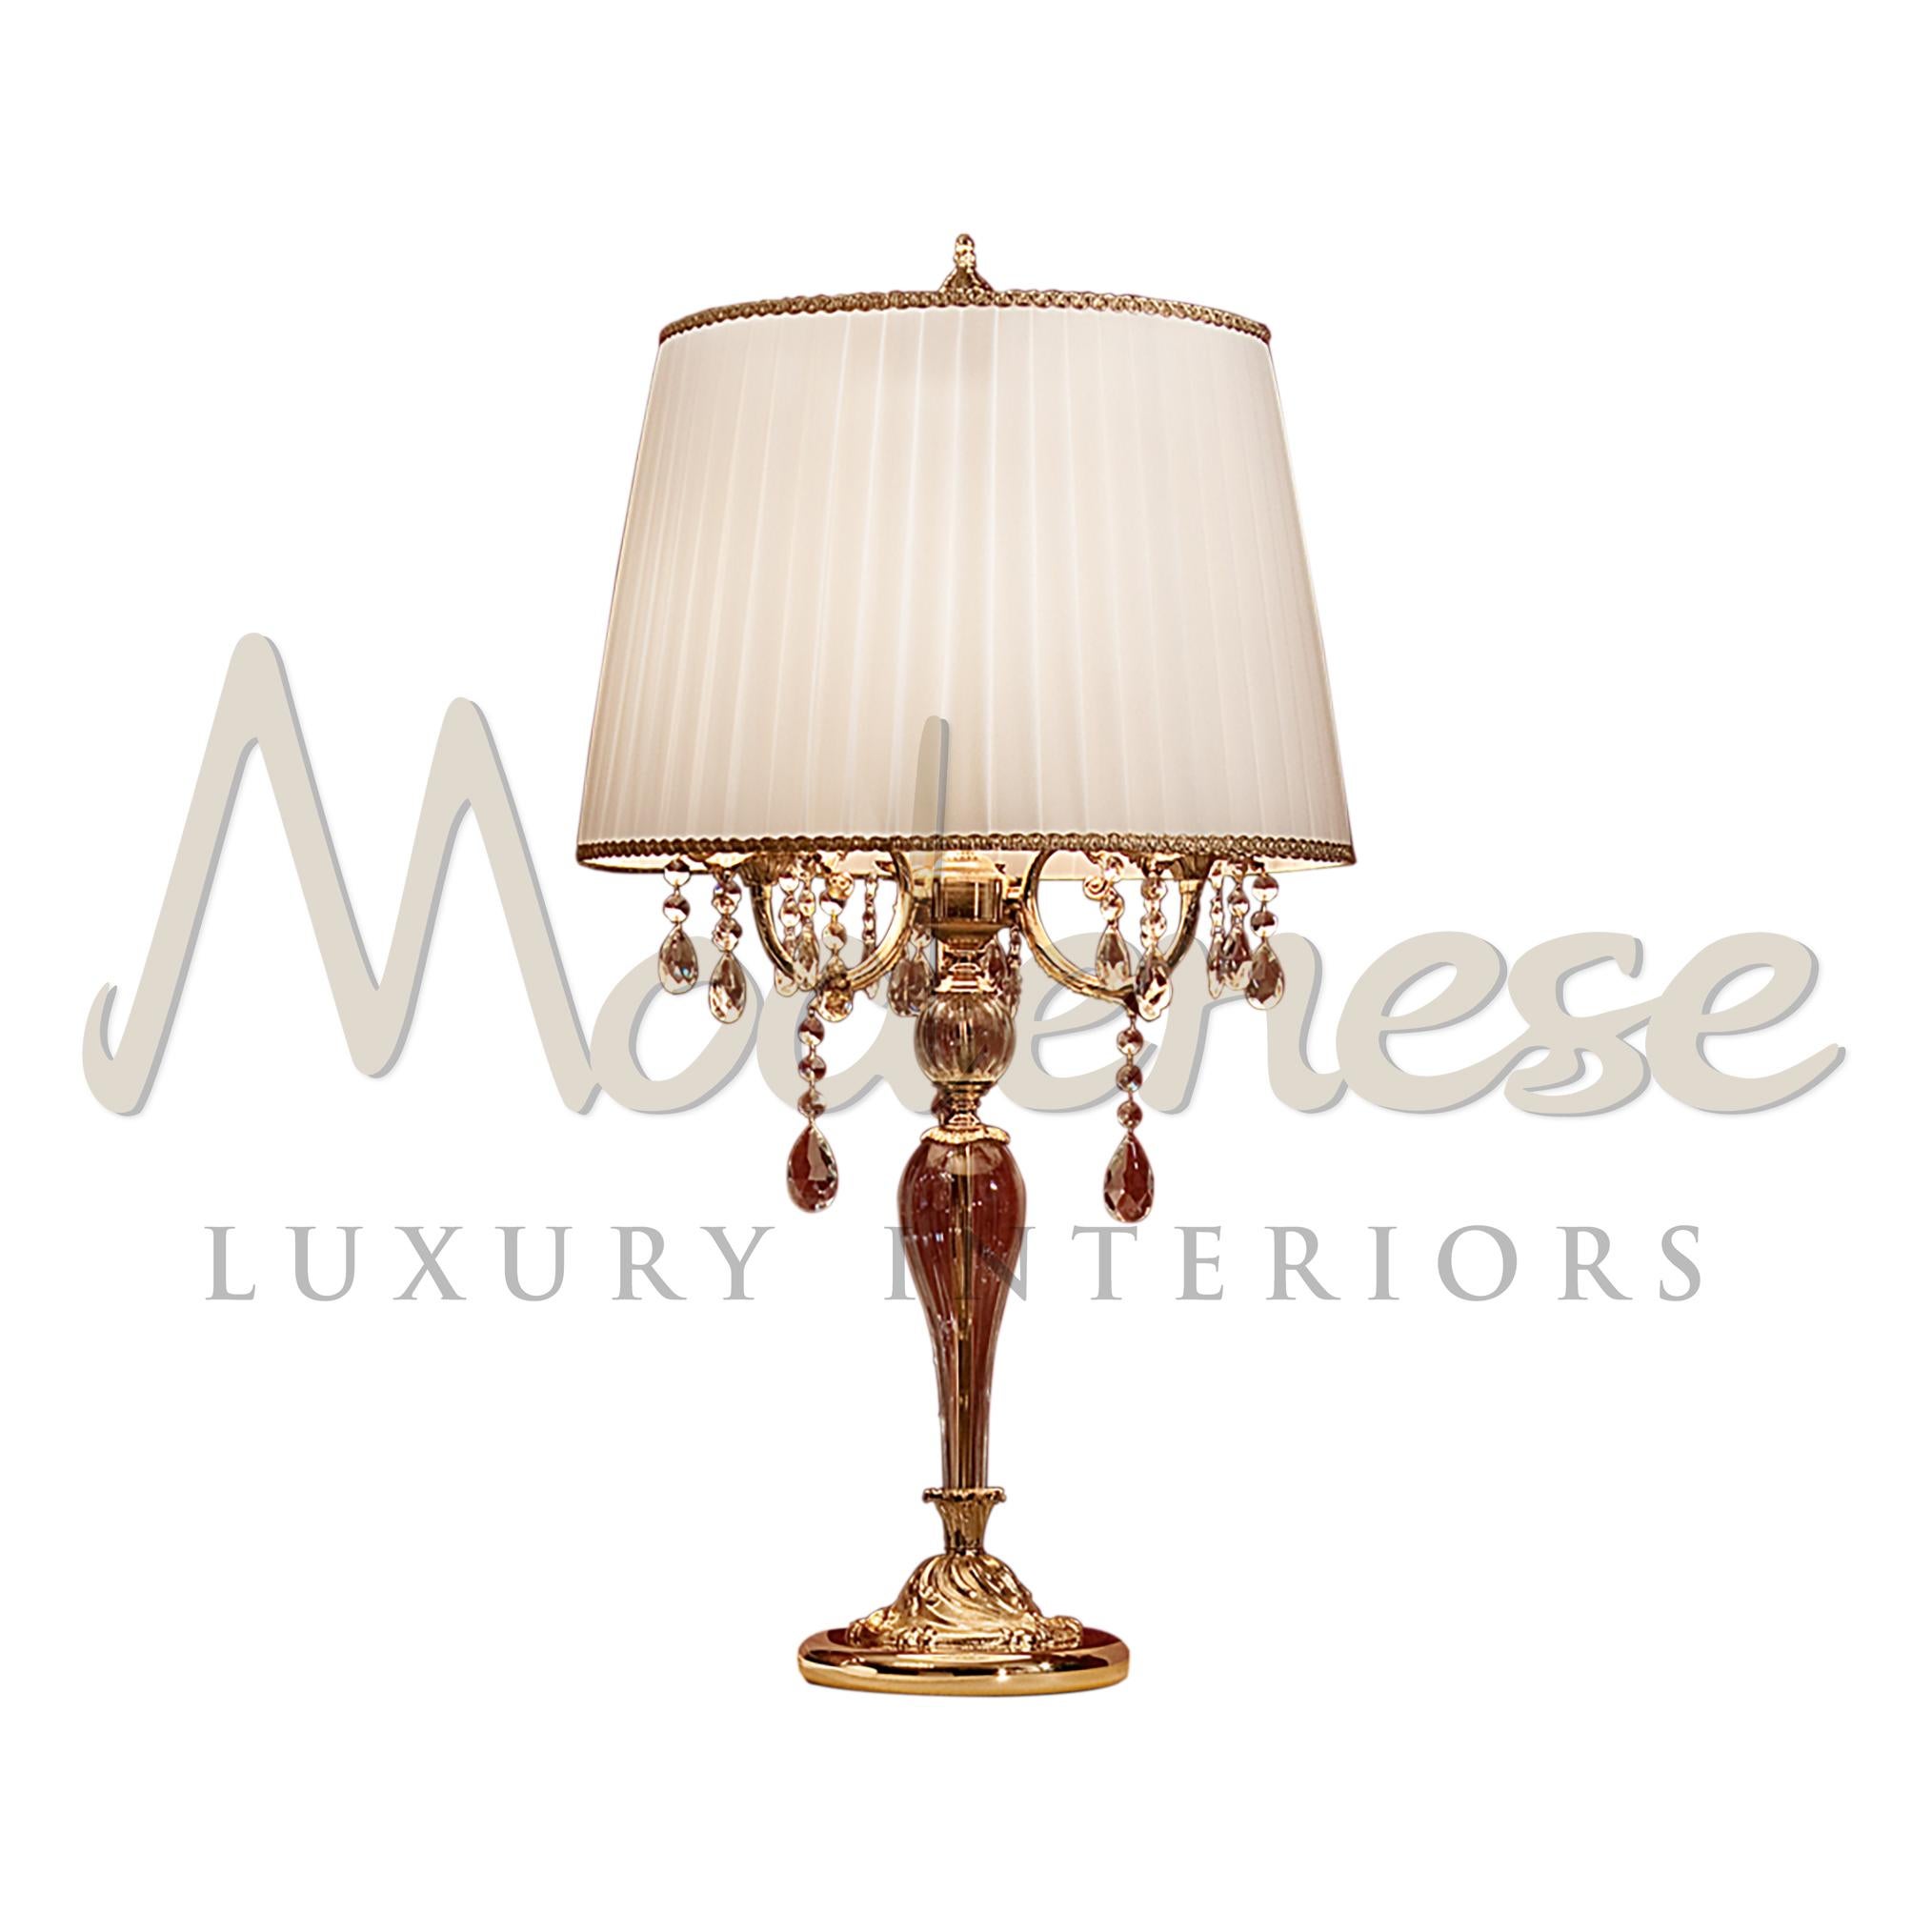 Les designers de Modenese Luxury Interiors ont conçu cette lampe de table en combinant une structure plaquée or antique 24kt, des pendentifs en cristal de Scholer et des tissus élégants. Ce modèle nécessite 3 ampoules à vis E14 (60Watt max).